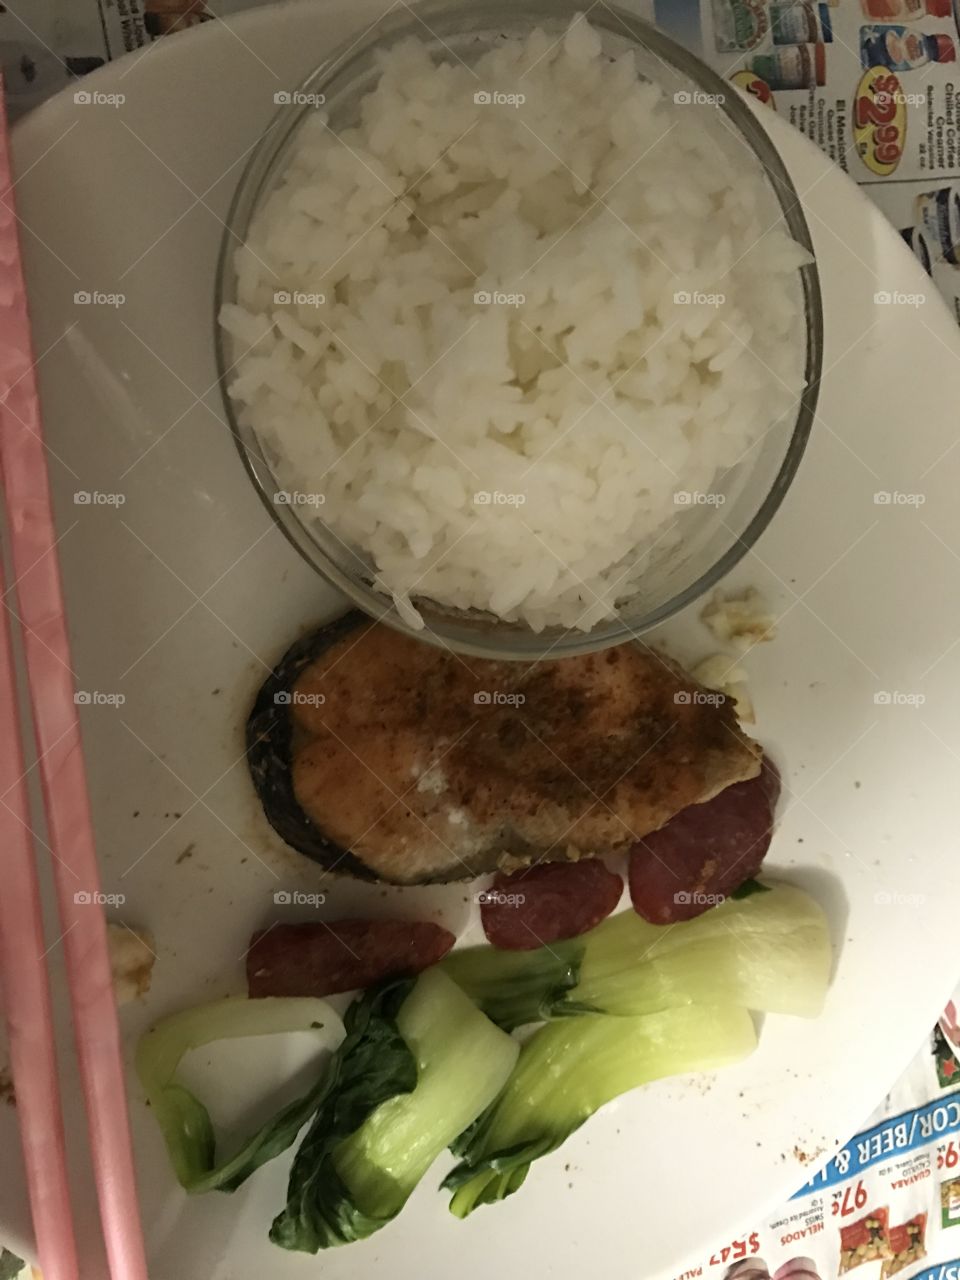 Rice - salmon - sausage 